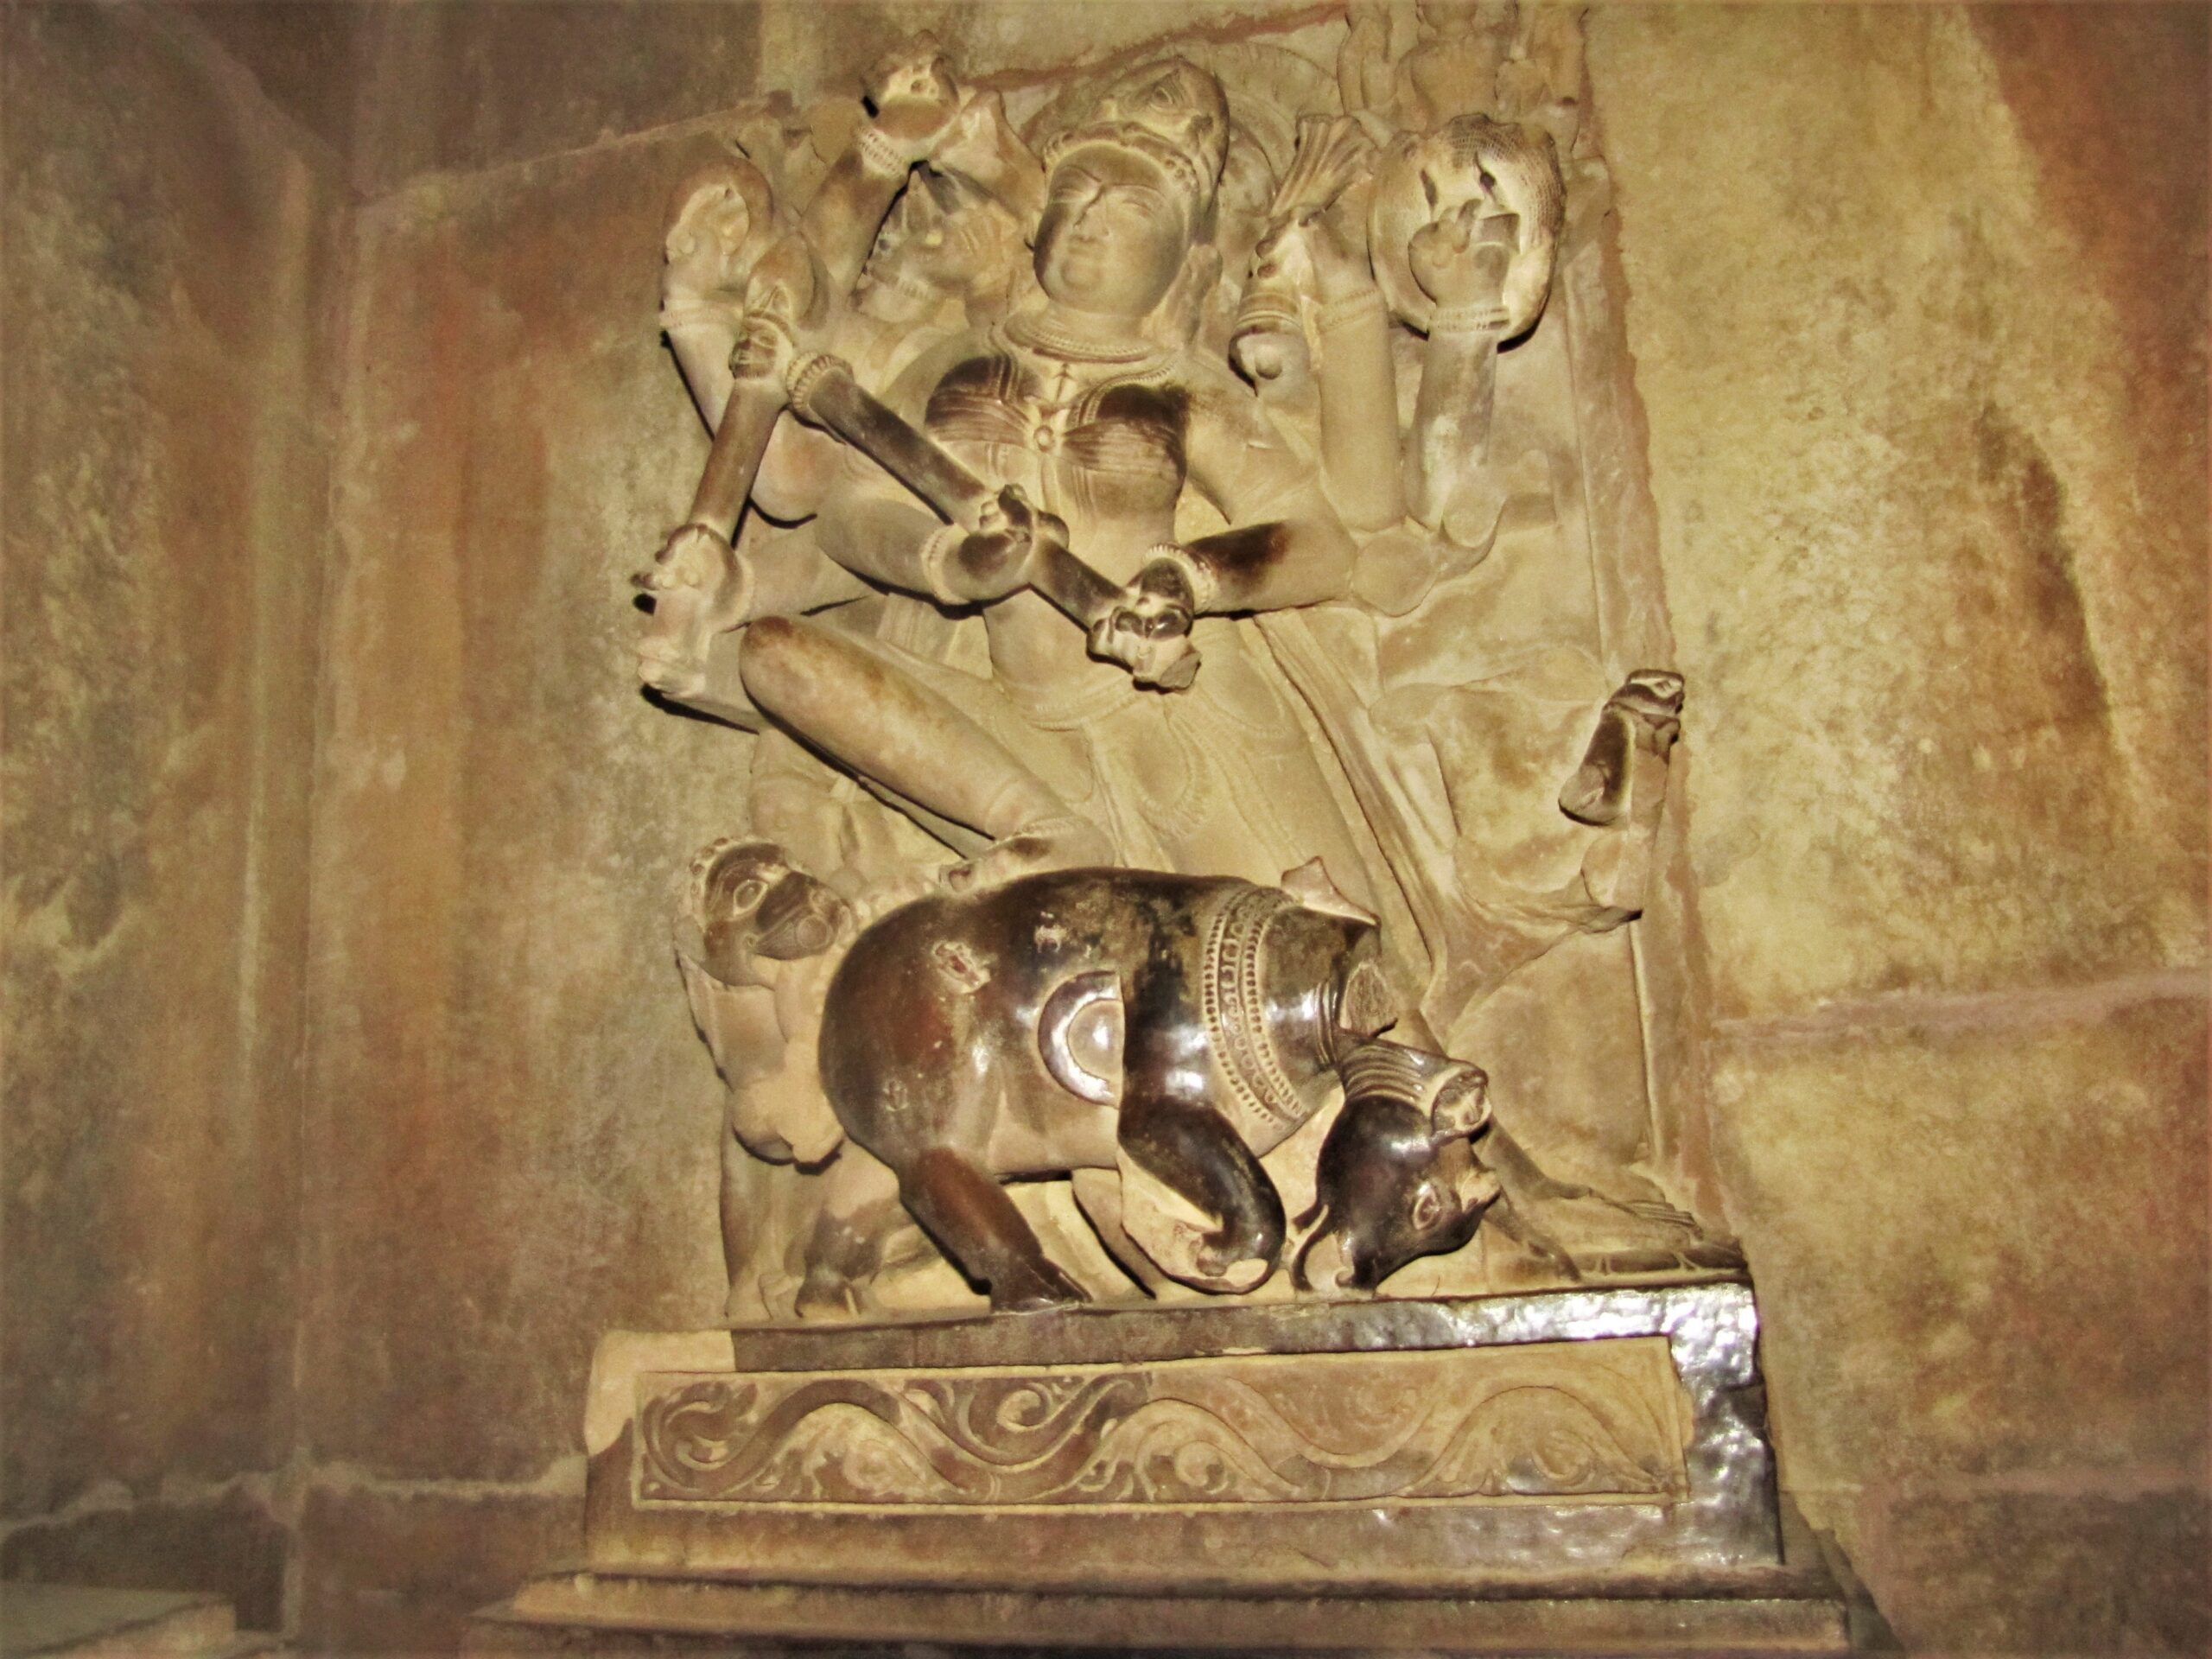 Mahishasuramardini sculpture at Lakshman Temple, Khajuraho